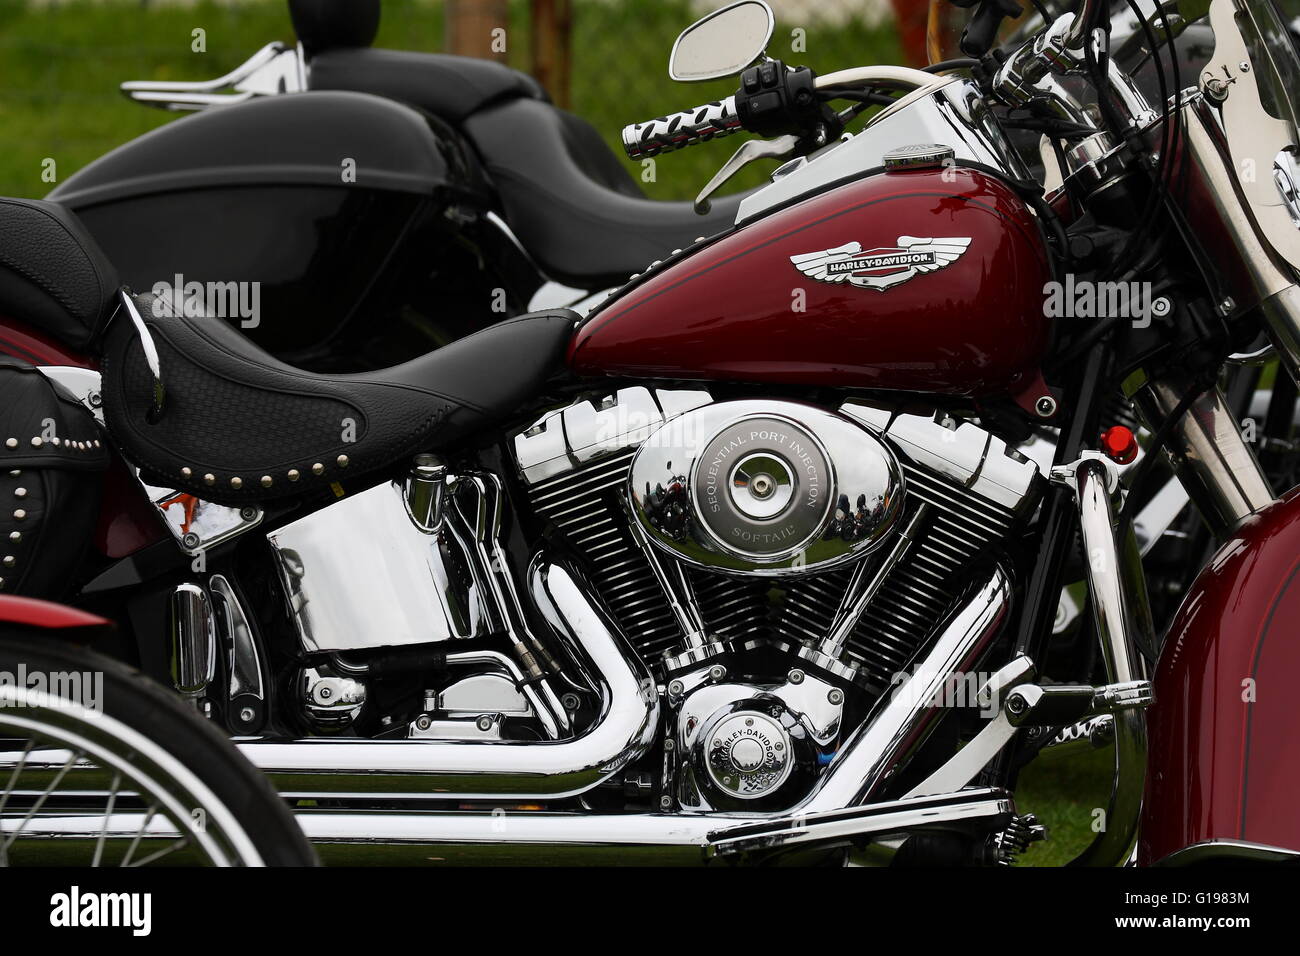 Harley Davidson moto close-up Banque D'Images